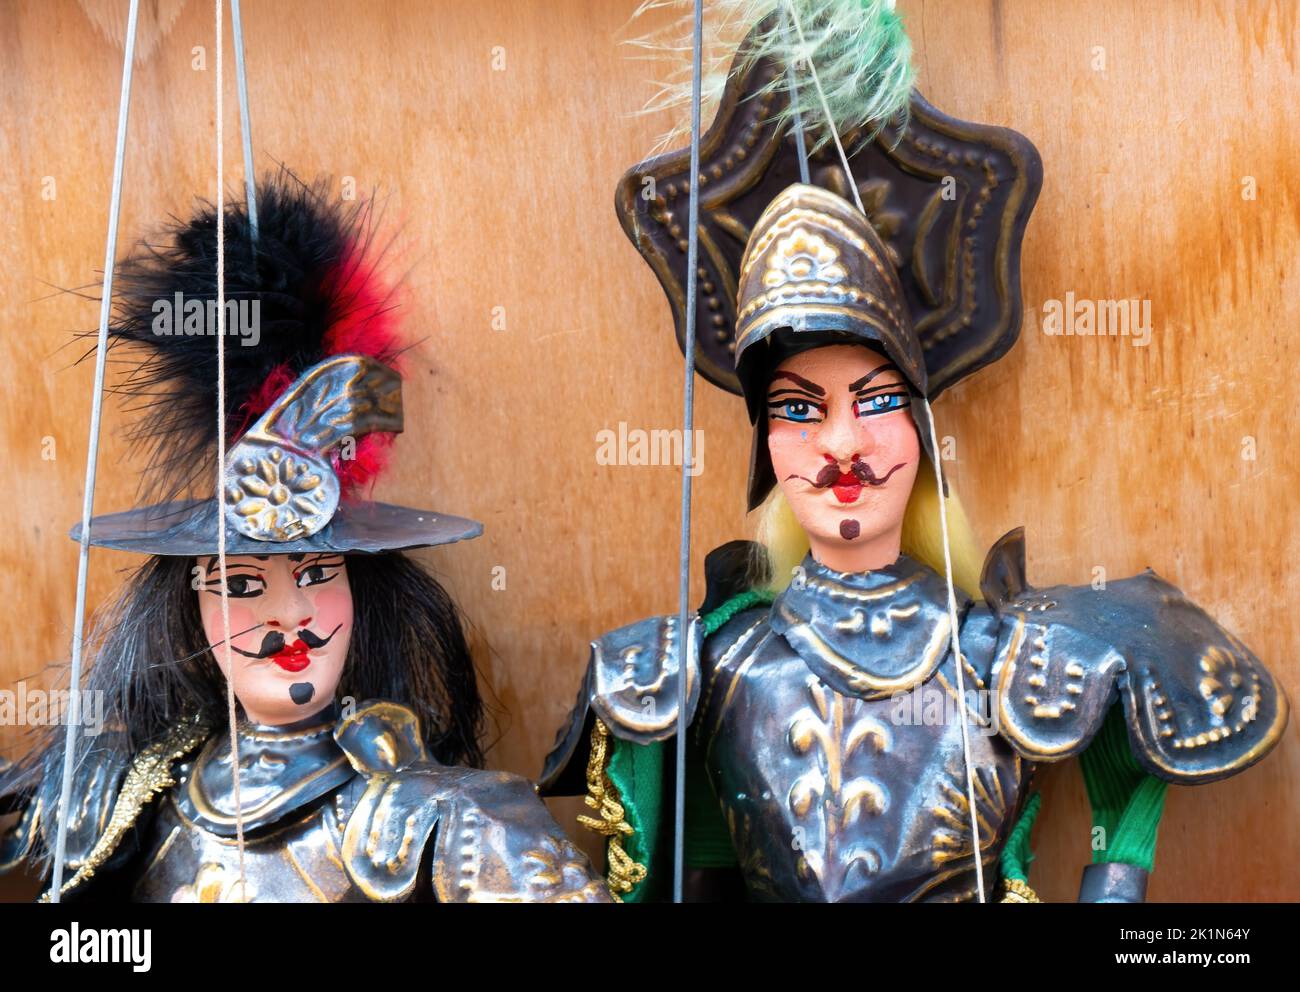 Traditionelle sizilianische Marionetten, die für die Opera dei Pupi verwendet werden Stockfoto